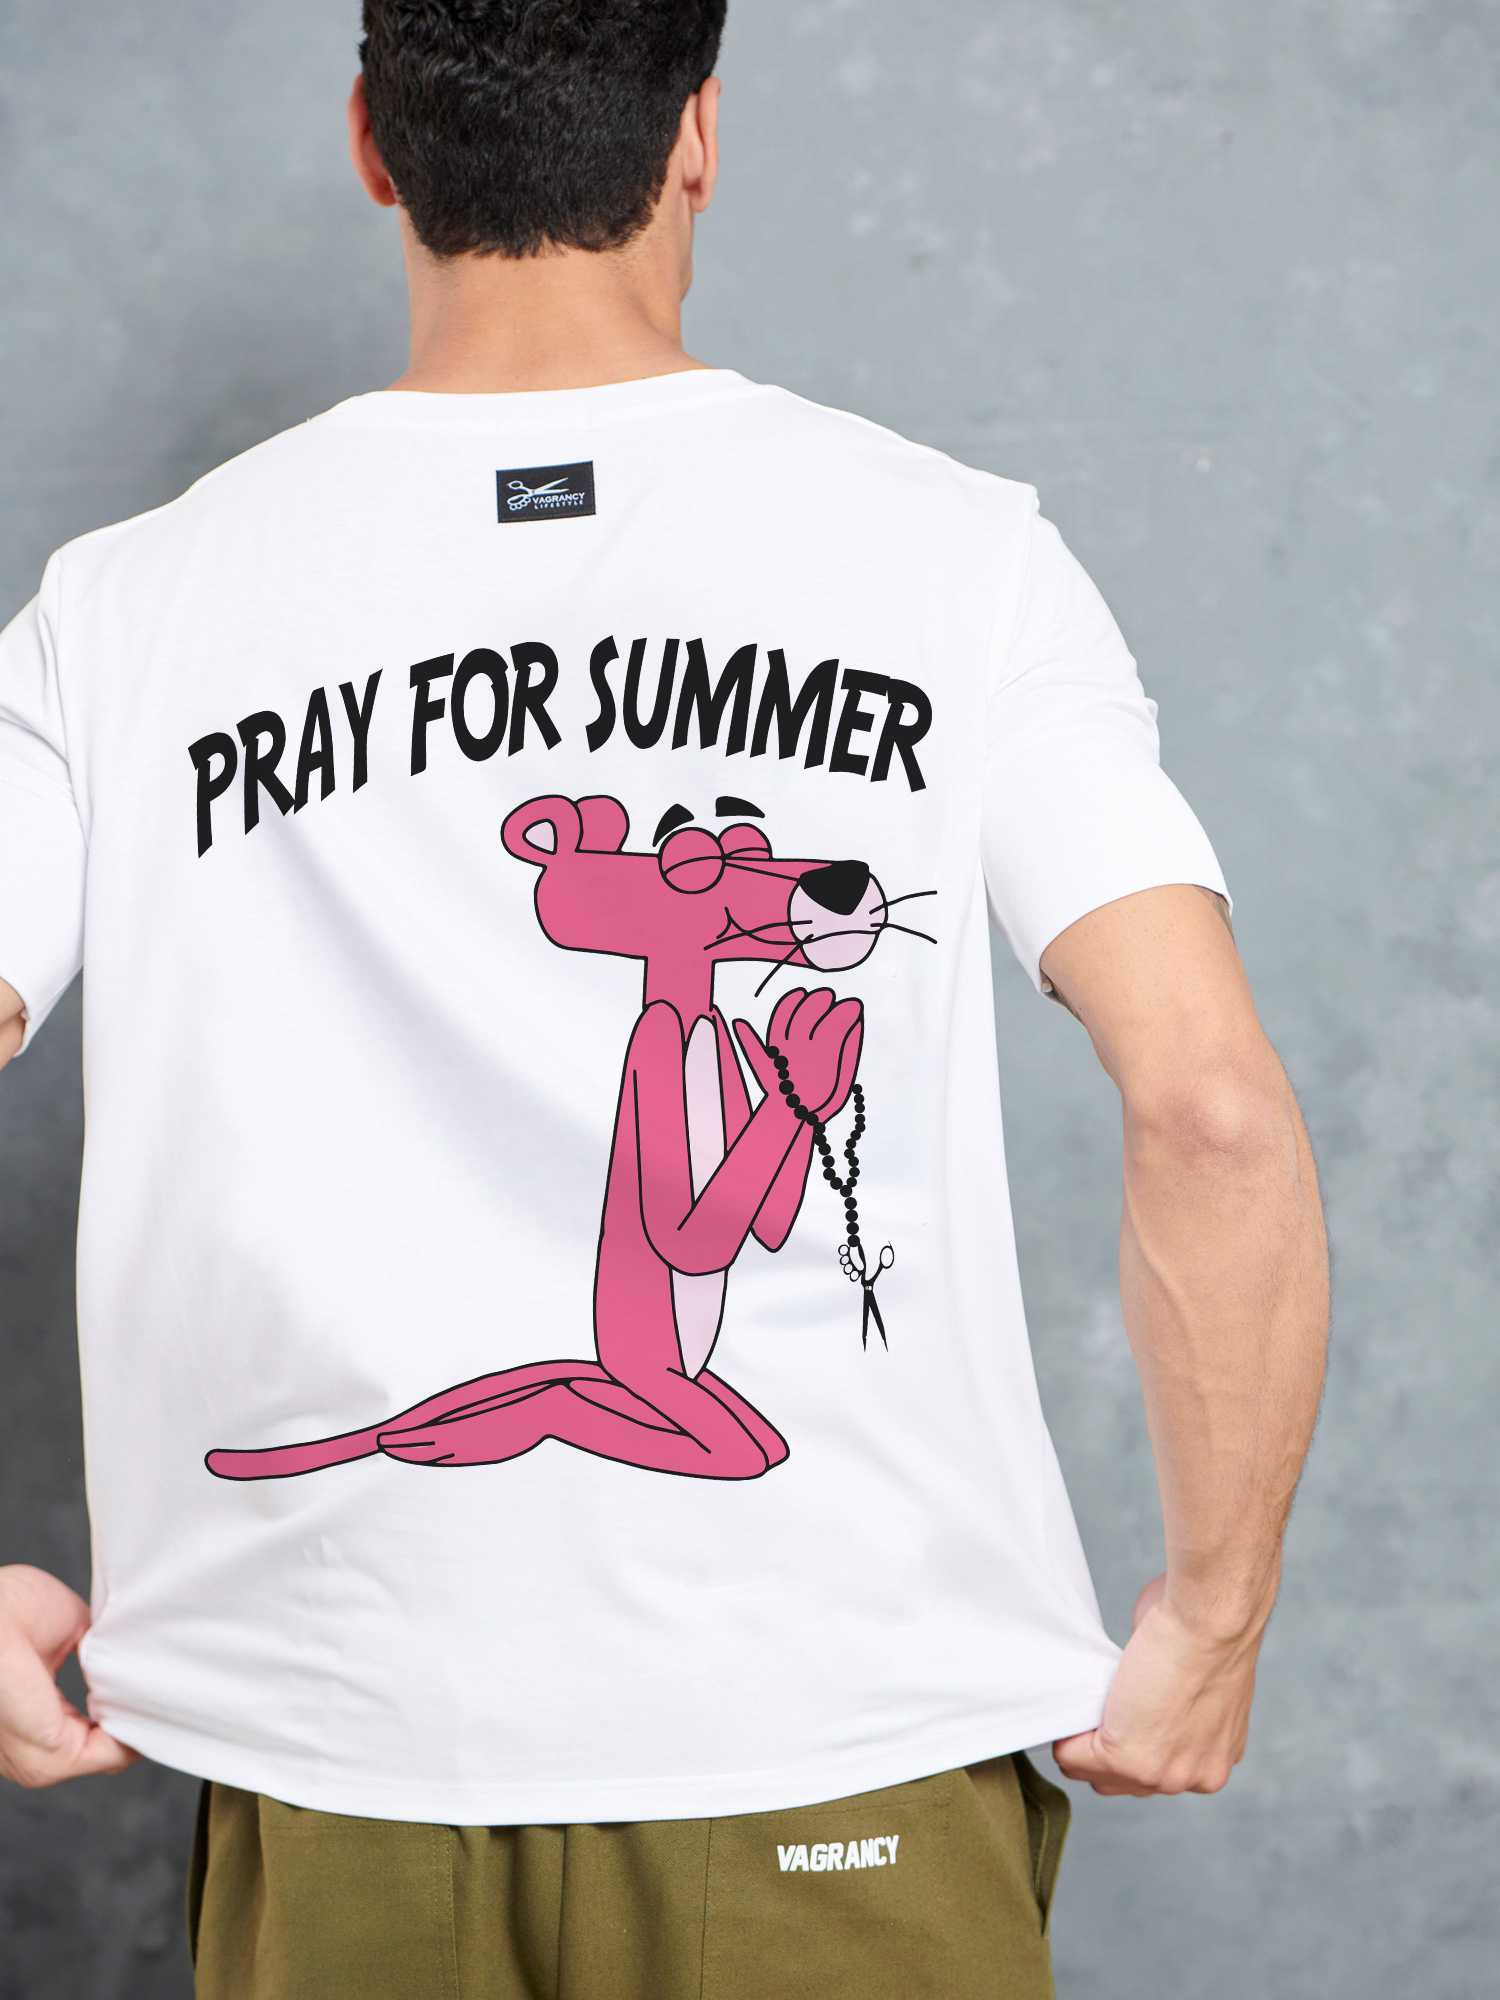 Pray for summer basic t-shirt